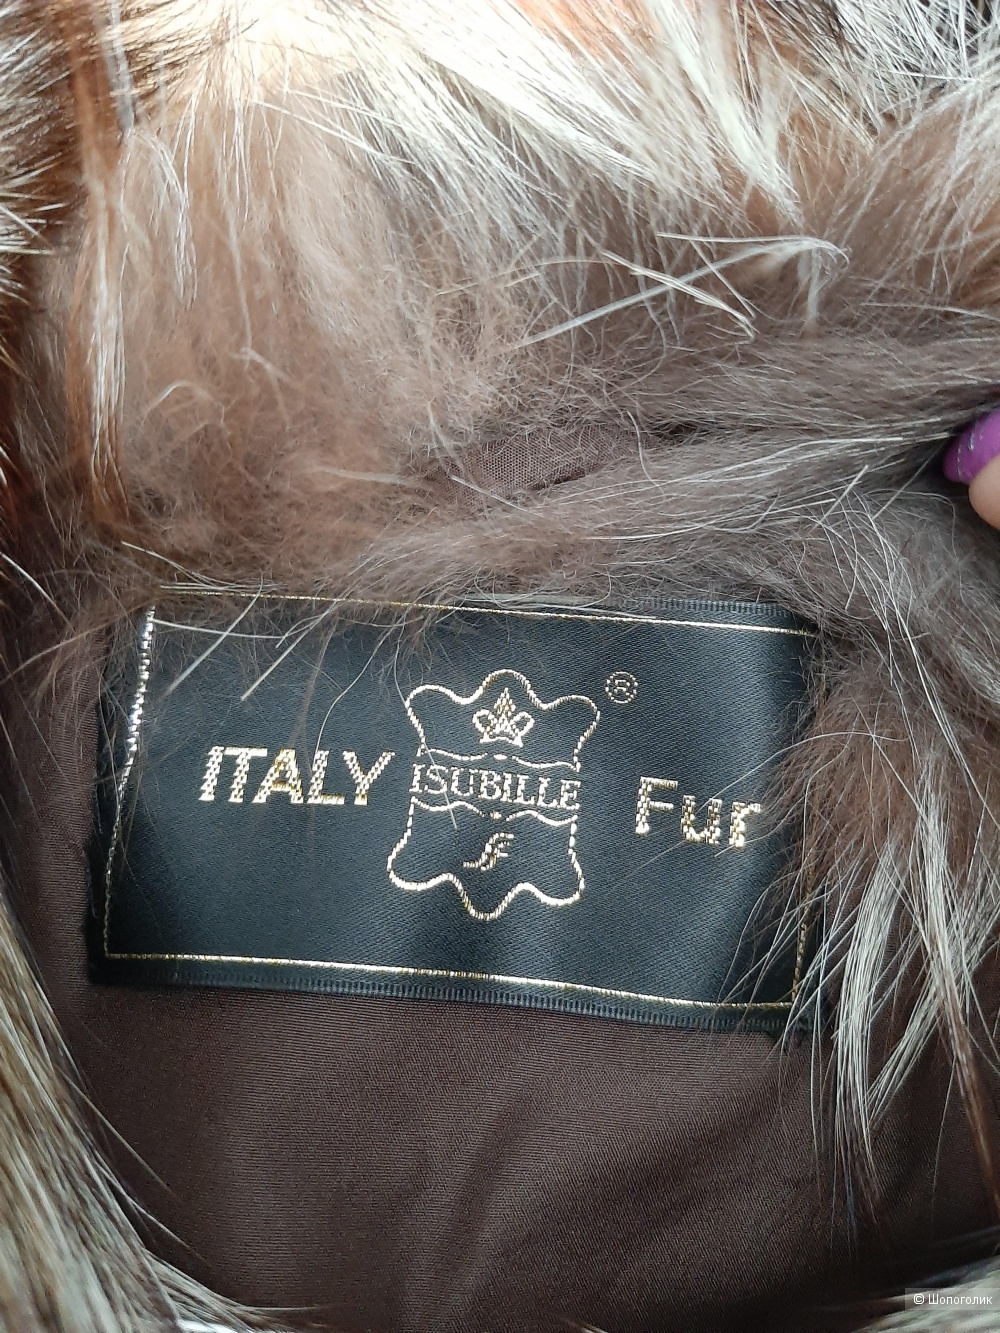 Шуба Isubille Italy Fur, 48